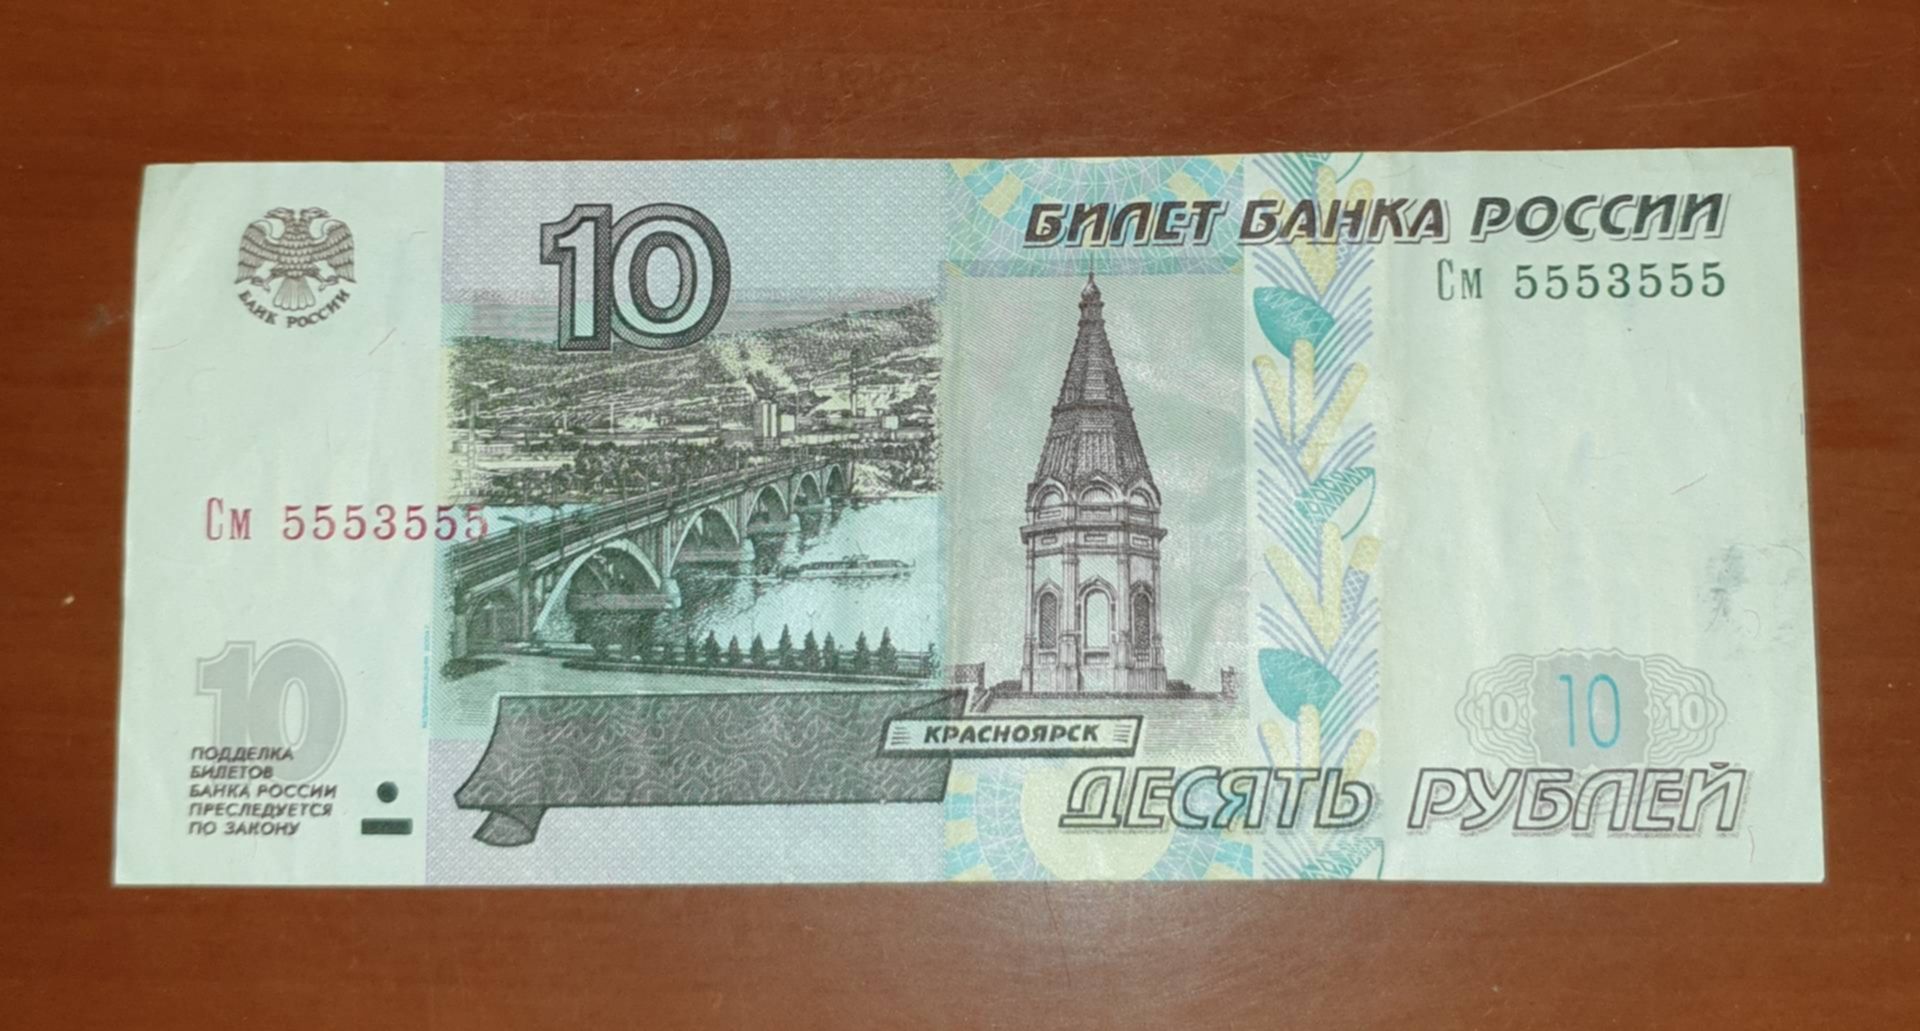 12 300 в рубли. 10 Рублей купюра. 10 Рублей бумажные. 10 Рублей банкнота. 10 Рублей без модификации.